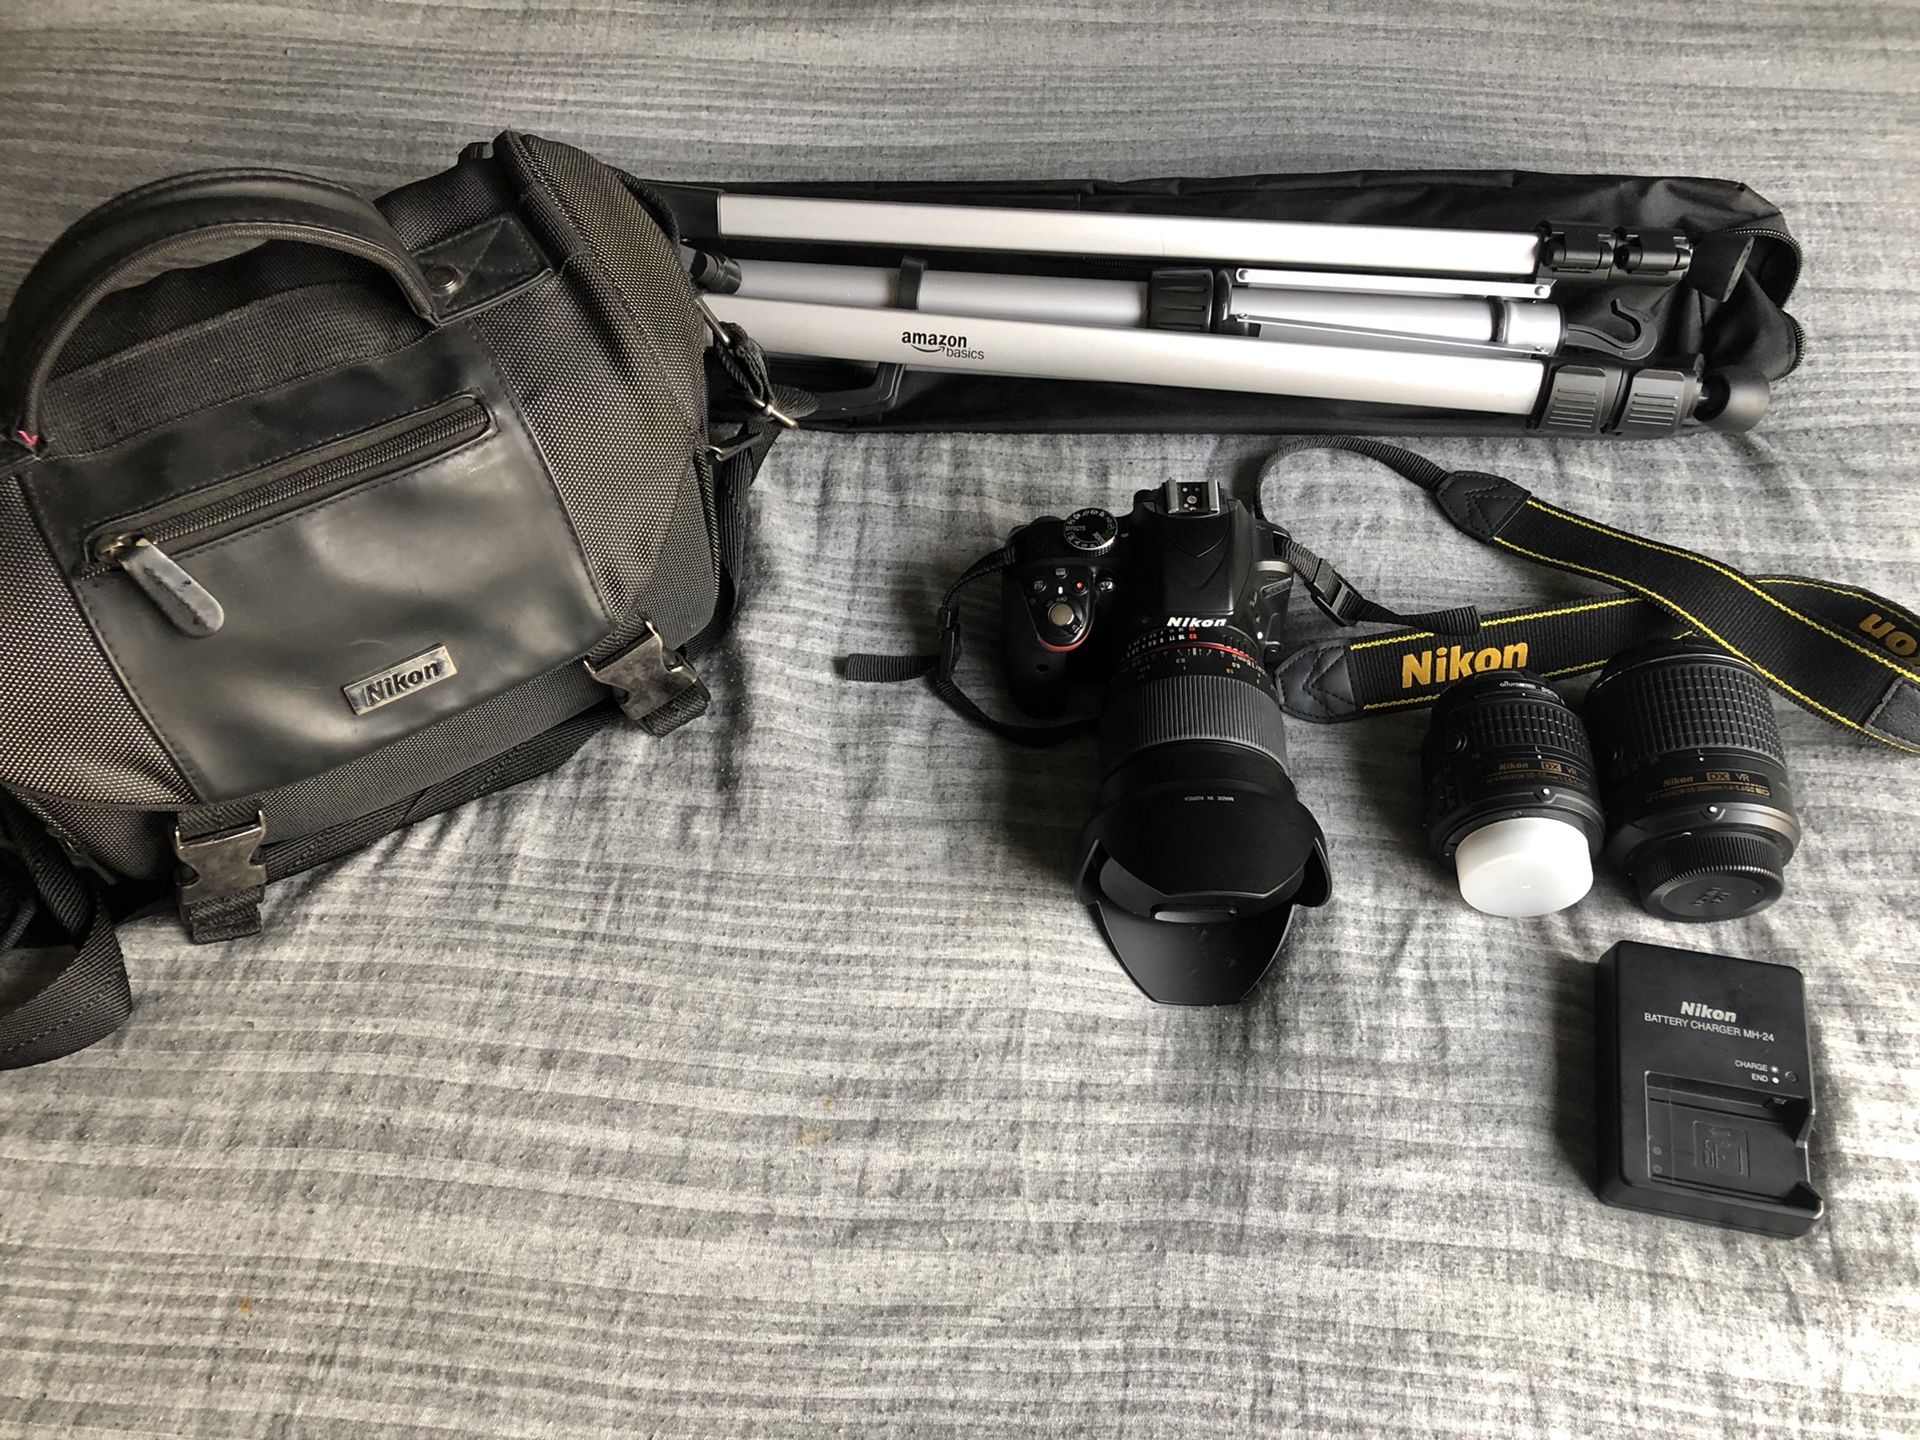 Nikon D3300 + 3 lenses, tripod, 64 gb card, & camera bag